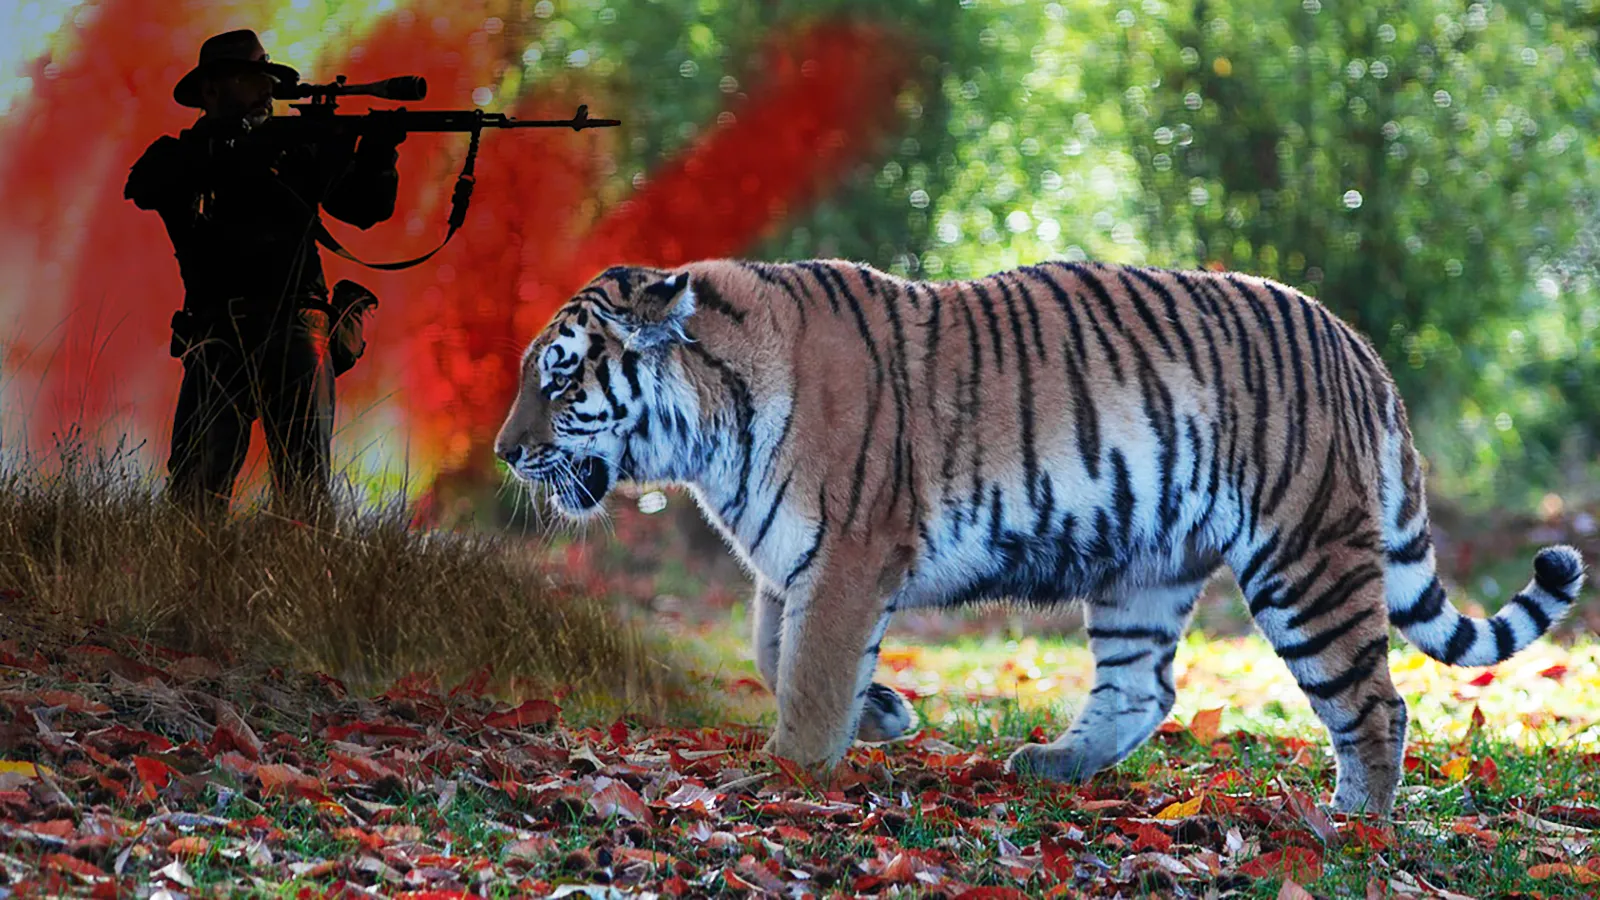 Тигров в Индии будут защищать от бpaконьеров вооруженные охранники